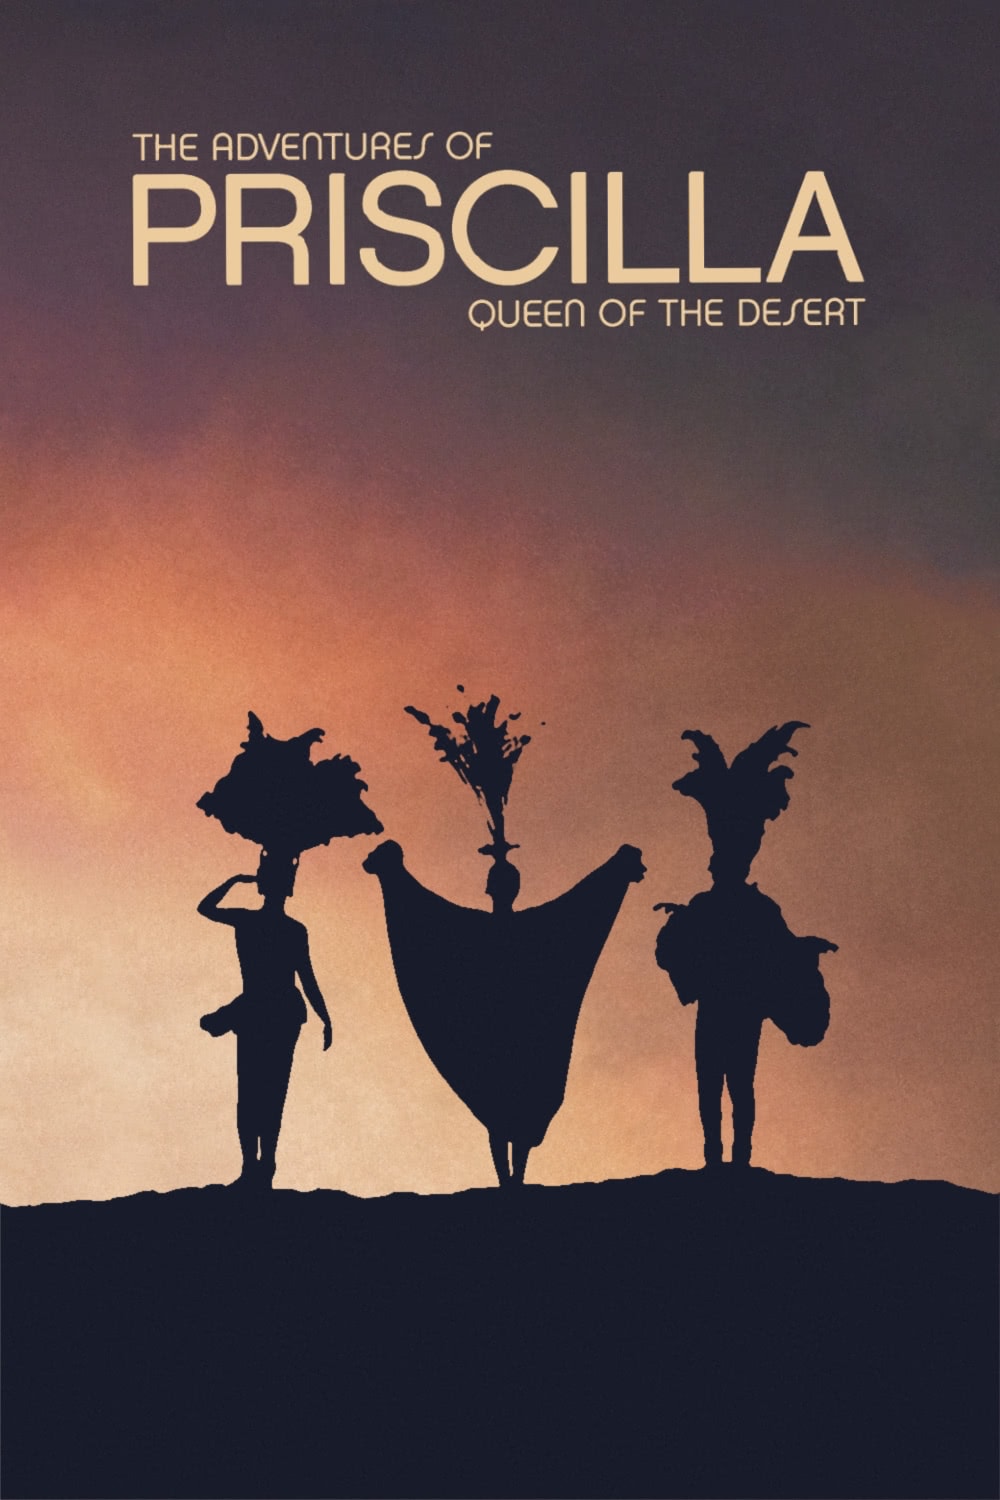 The Adventures of Priscilla, Queen of the Desert Blu-ray